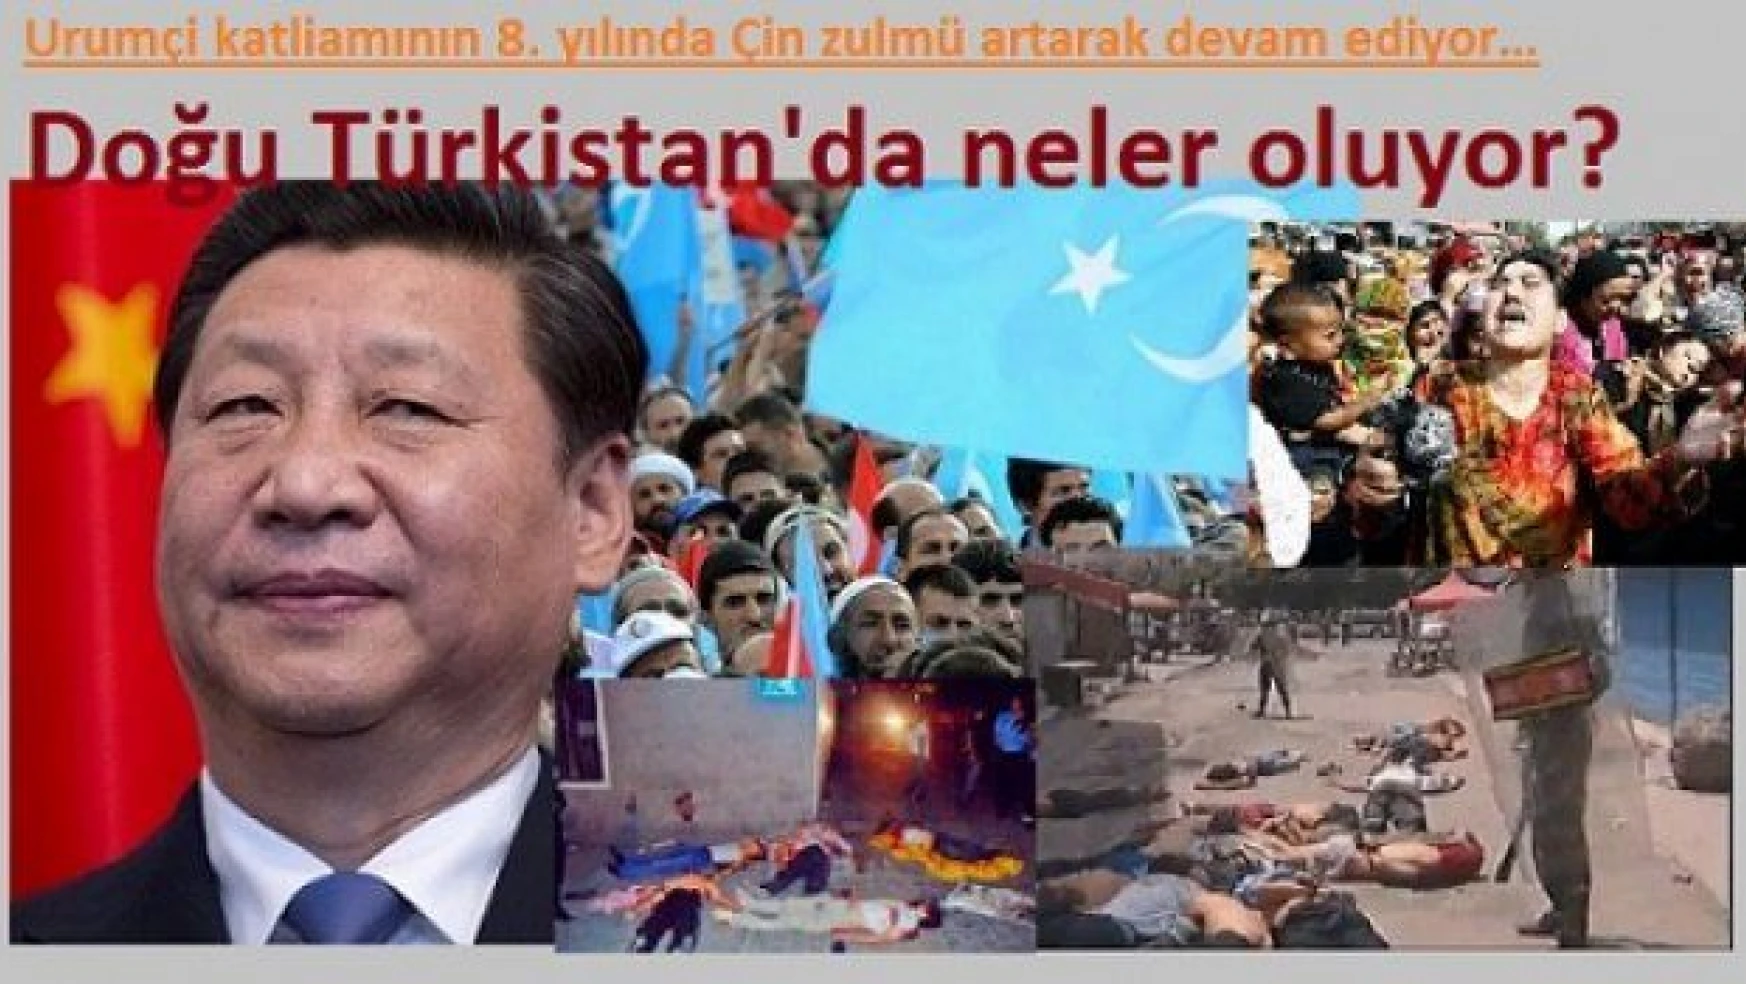 Urumçi katliamının 8. yılında Doğu Türkistan'da neler oluyor?